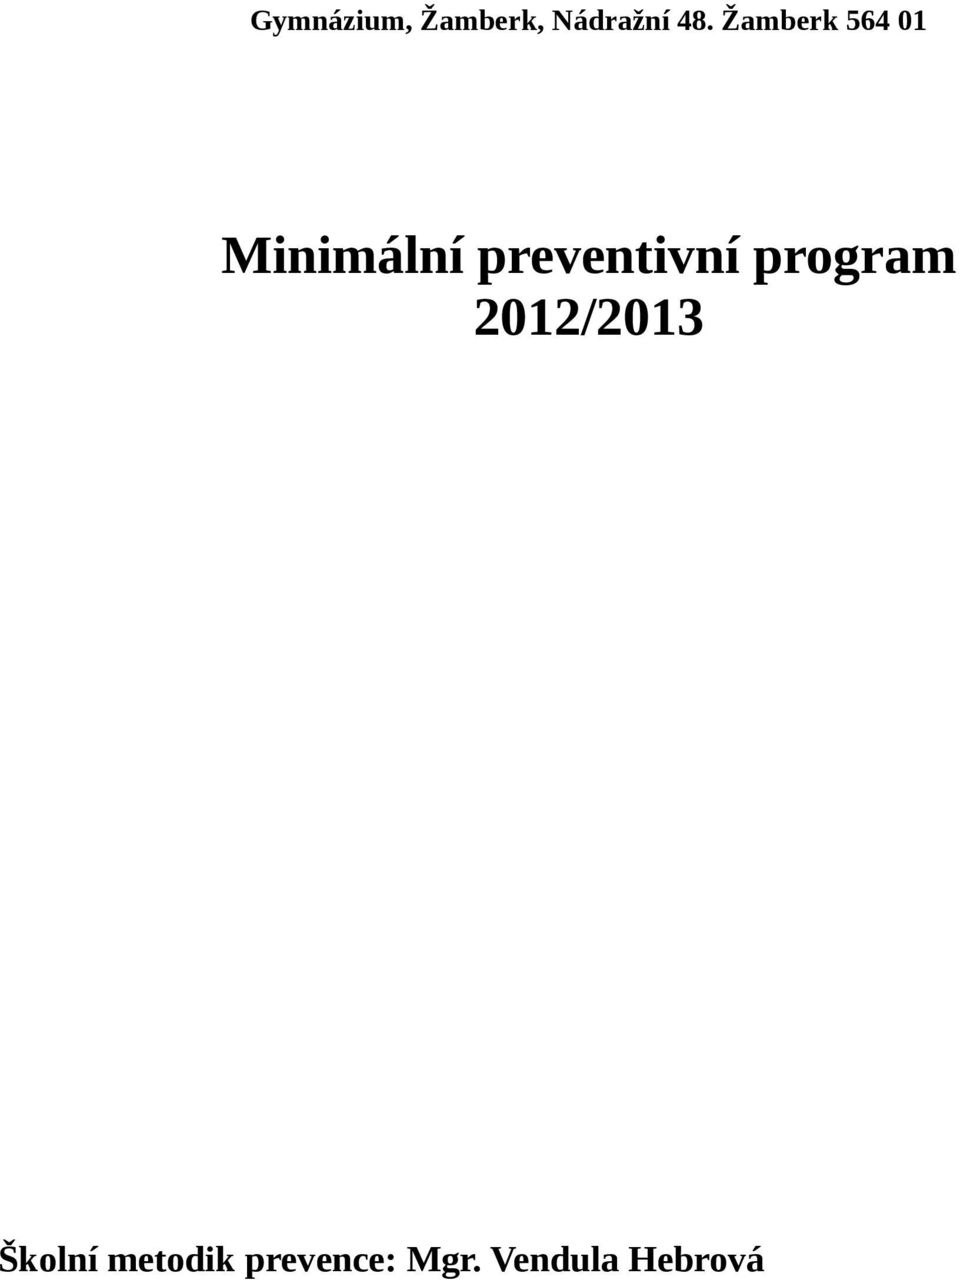 preventivní program 2012/2013